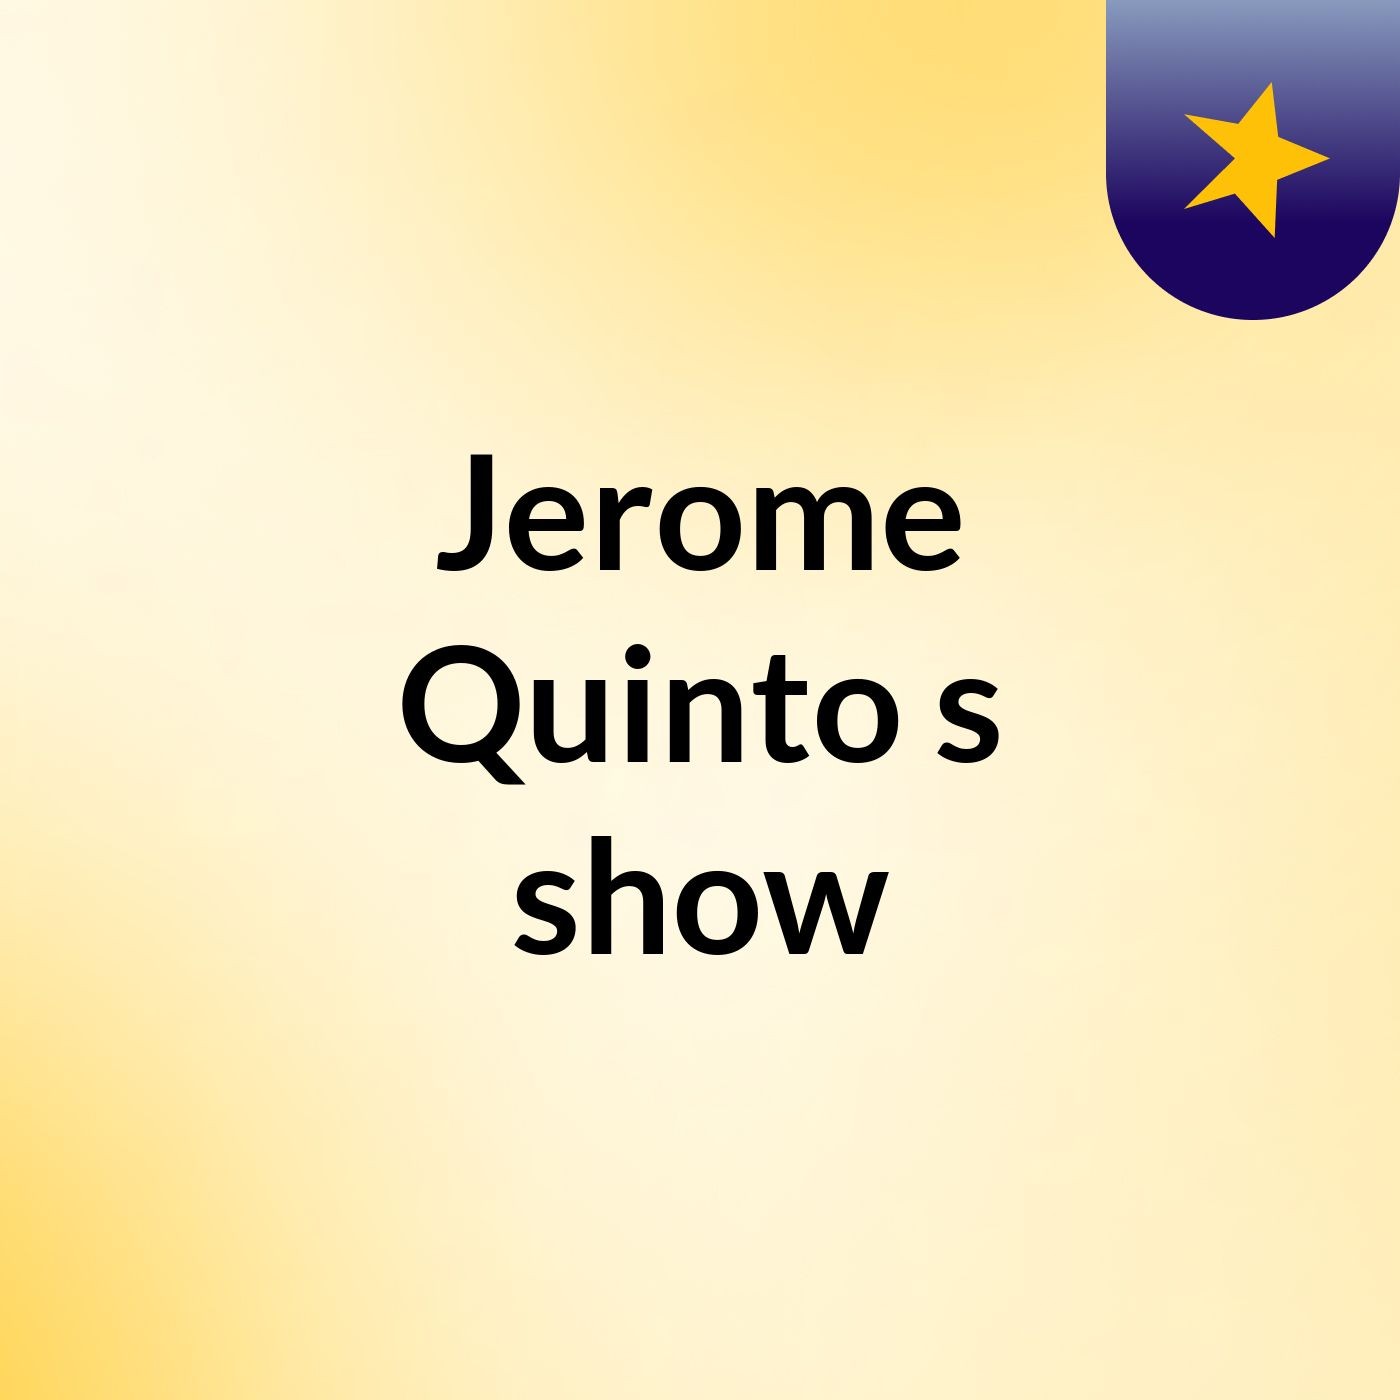 Jerome Quinto's show